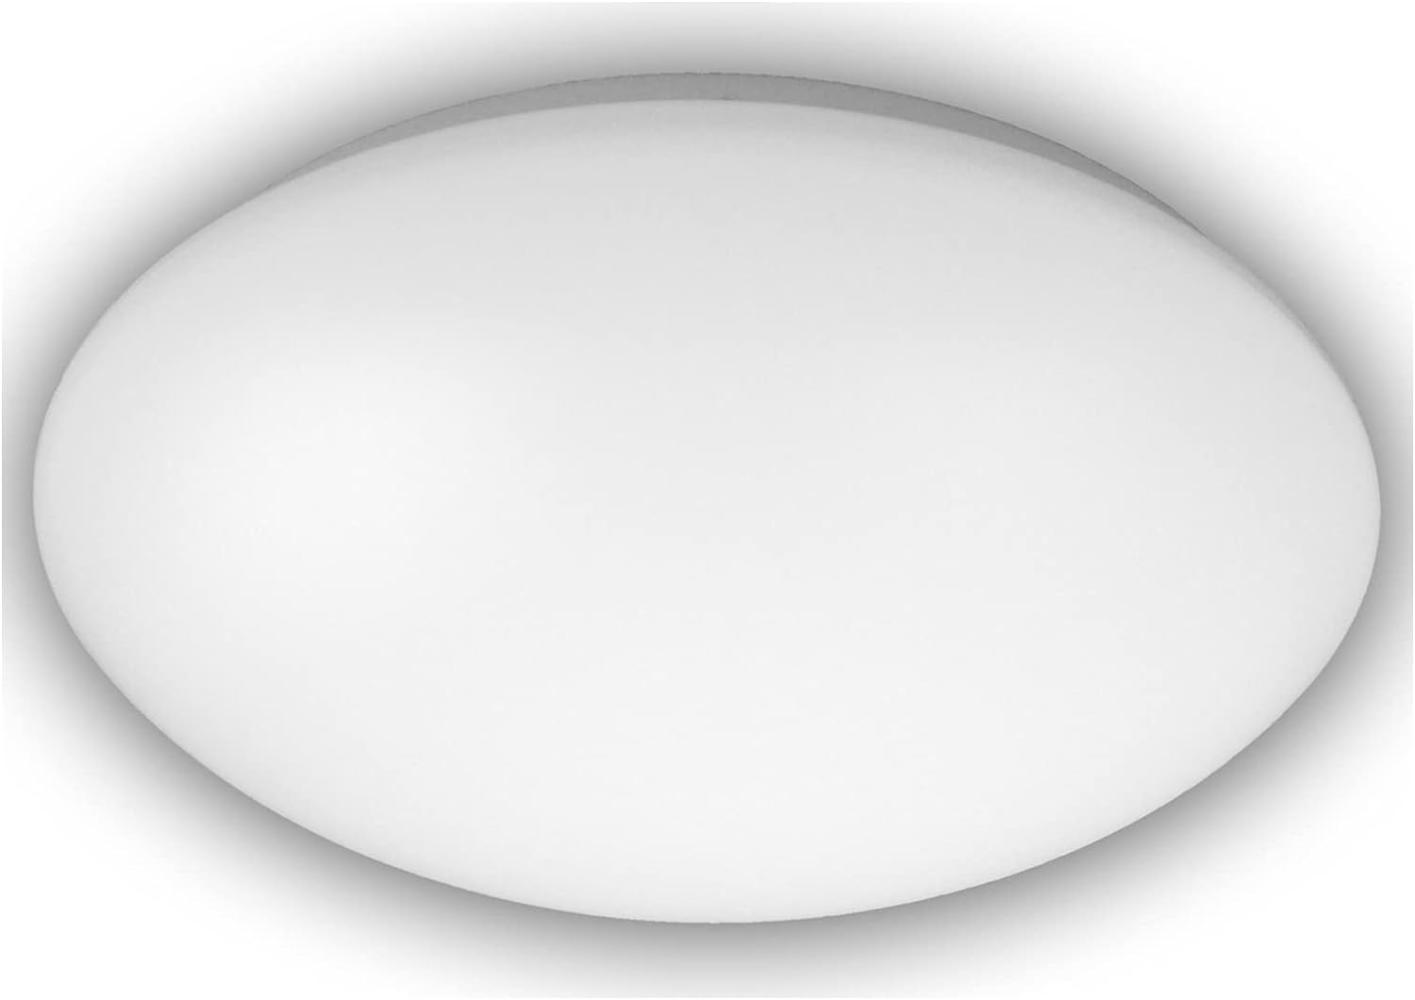 LED Deckenleuchte / Deckenschale rund, Kunststoff opalweiß, Ø 29 cm Bild 1